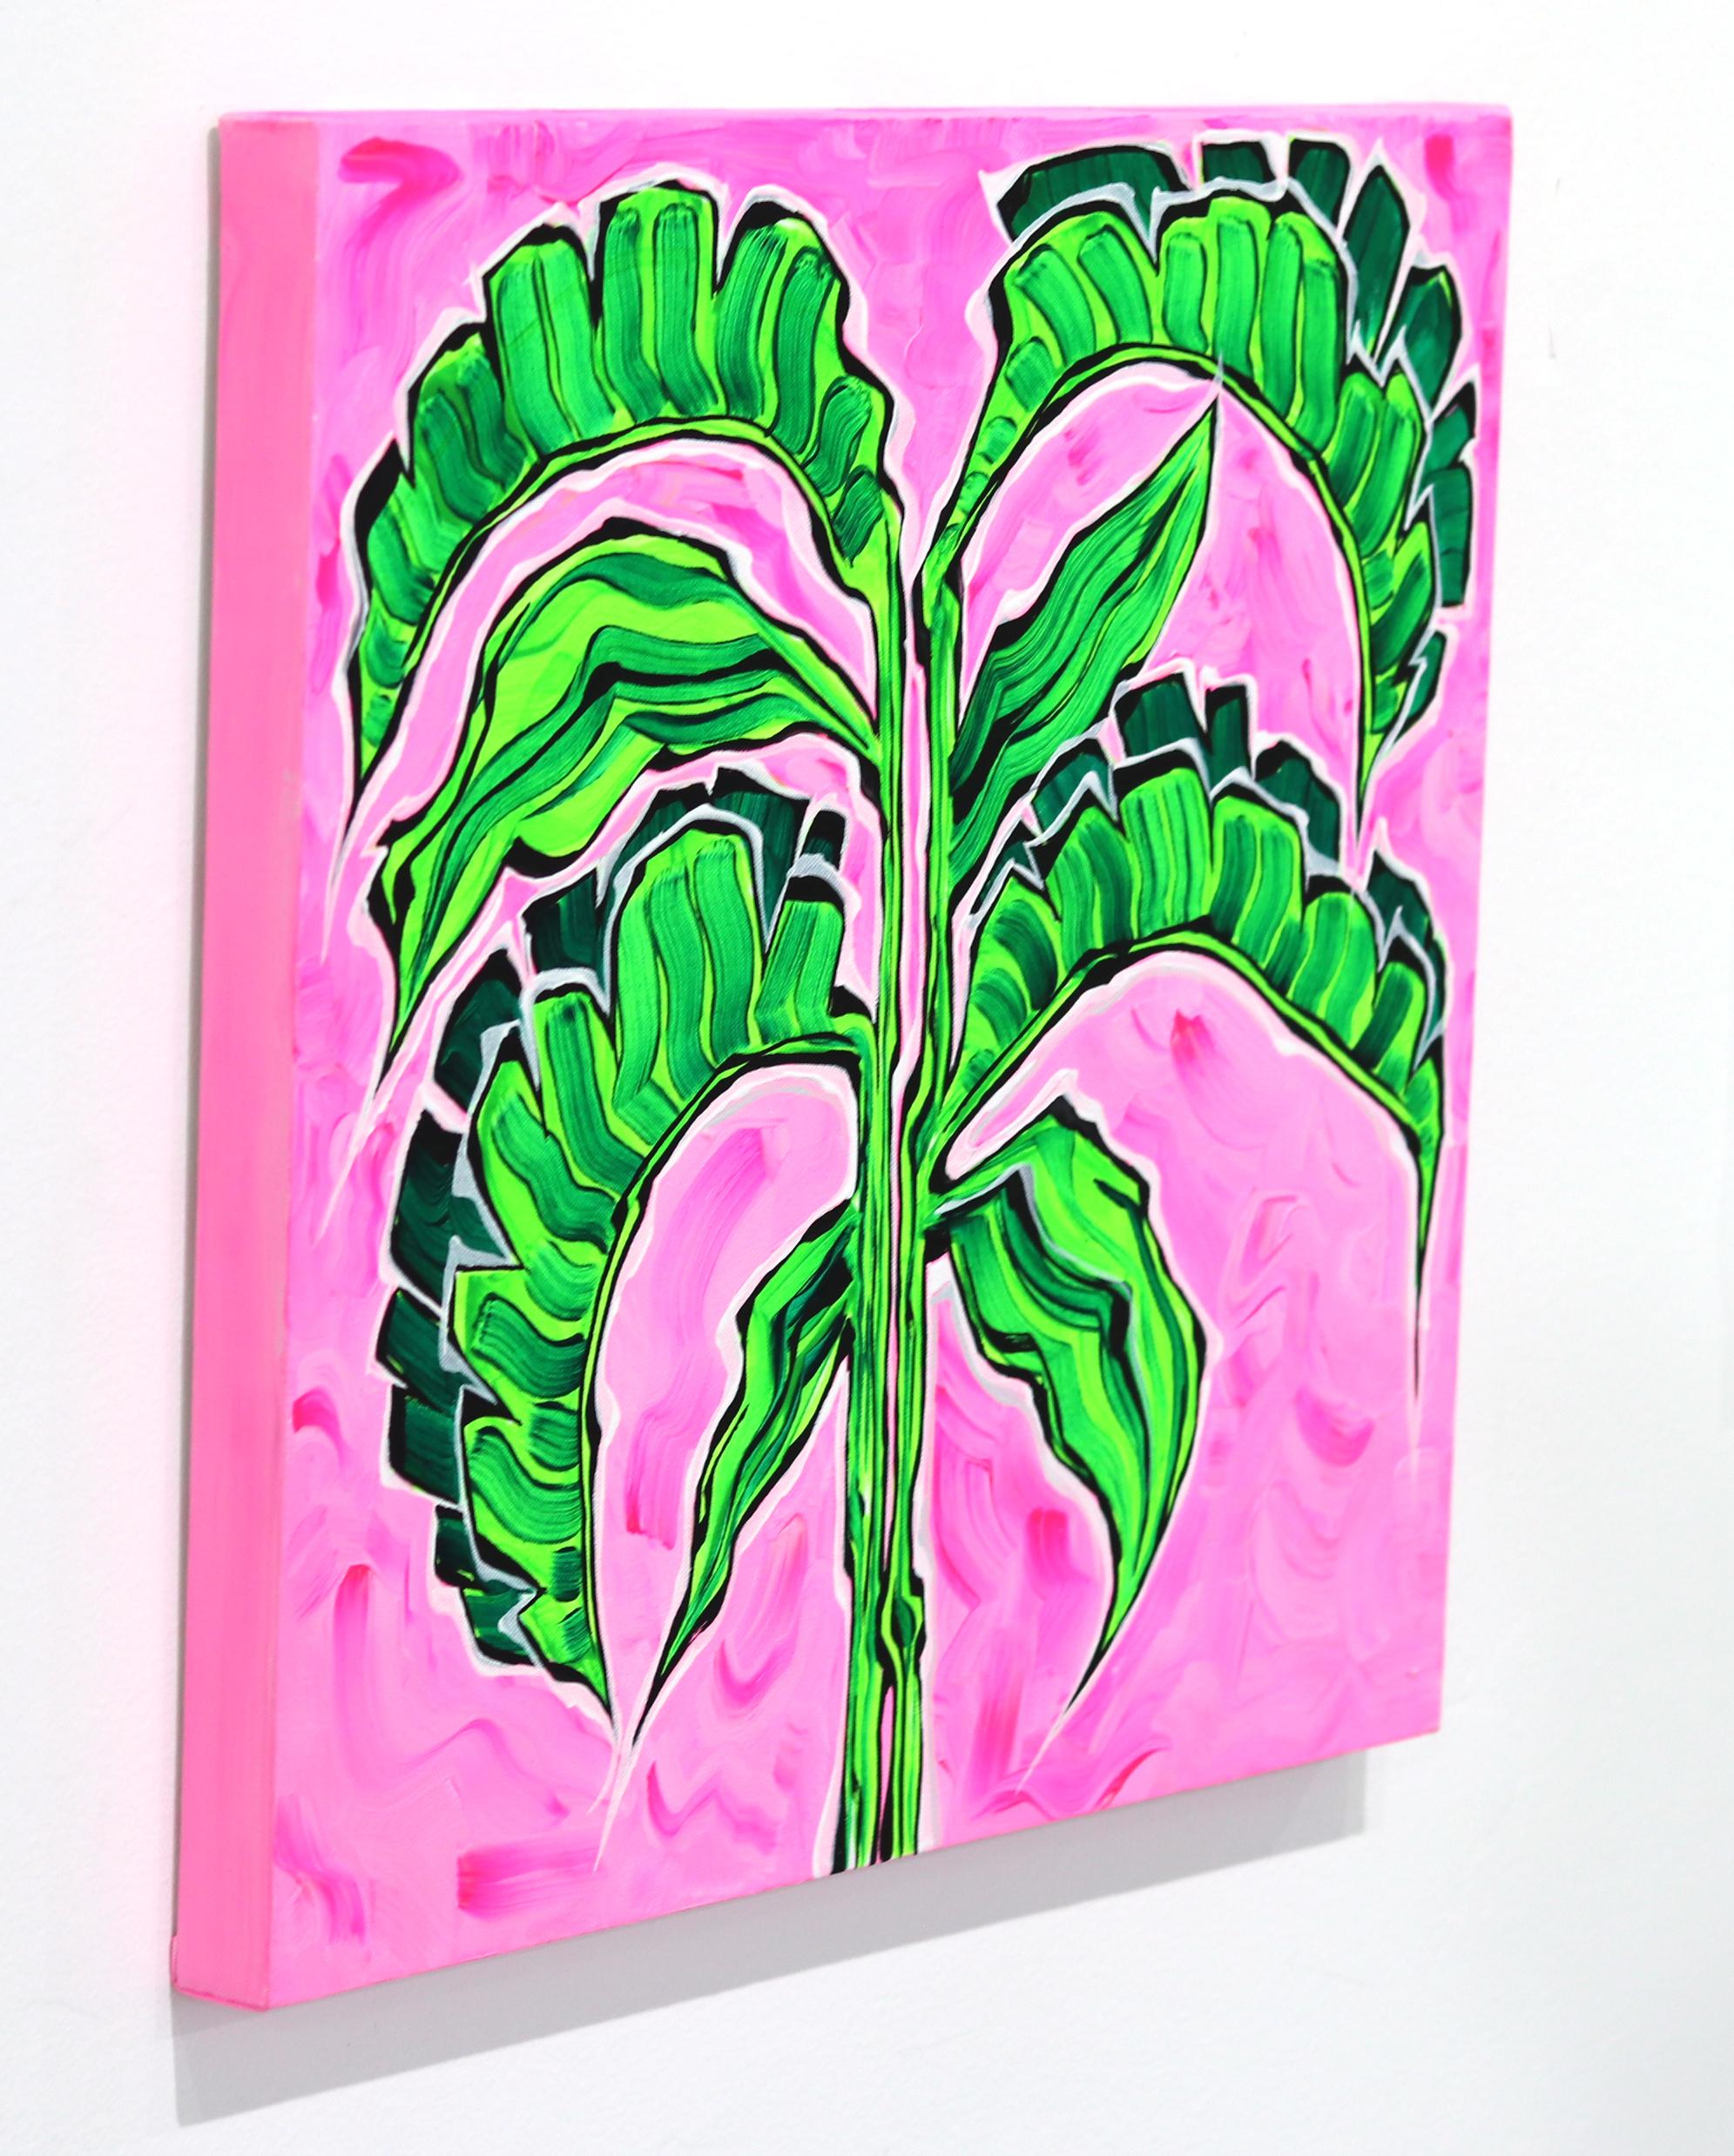 Die Kunstwerke des englischen Künstlers Jonjo Elliot sind eine Kollision des expressionistischen Fauvismus und seine Kollektionen ermutigen zu jugendlicher Offenheit. Pflanzen gedeihen in Umgebungen, in die der Betrachter eintauchen möchte. Er